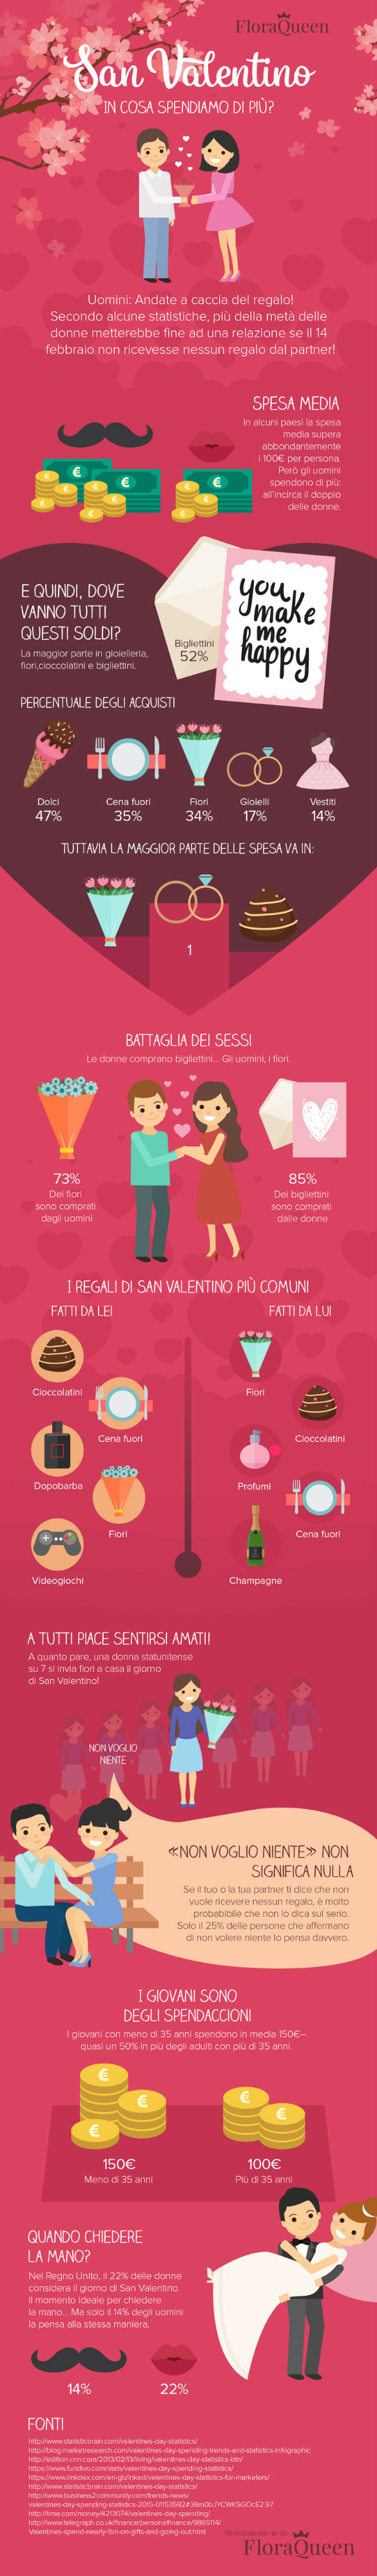 infografia - san valentino